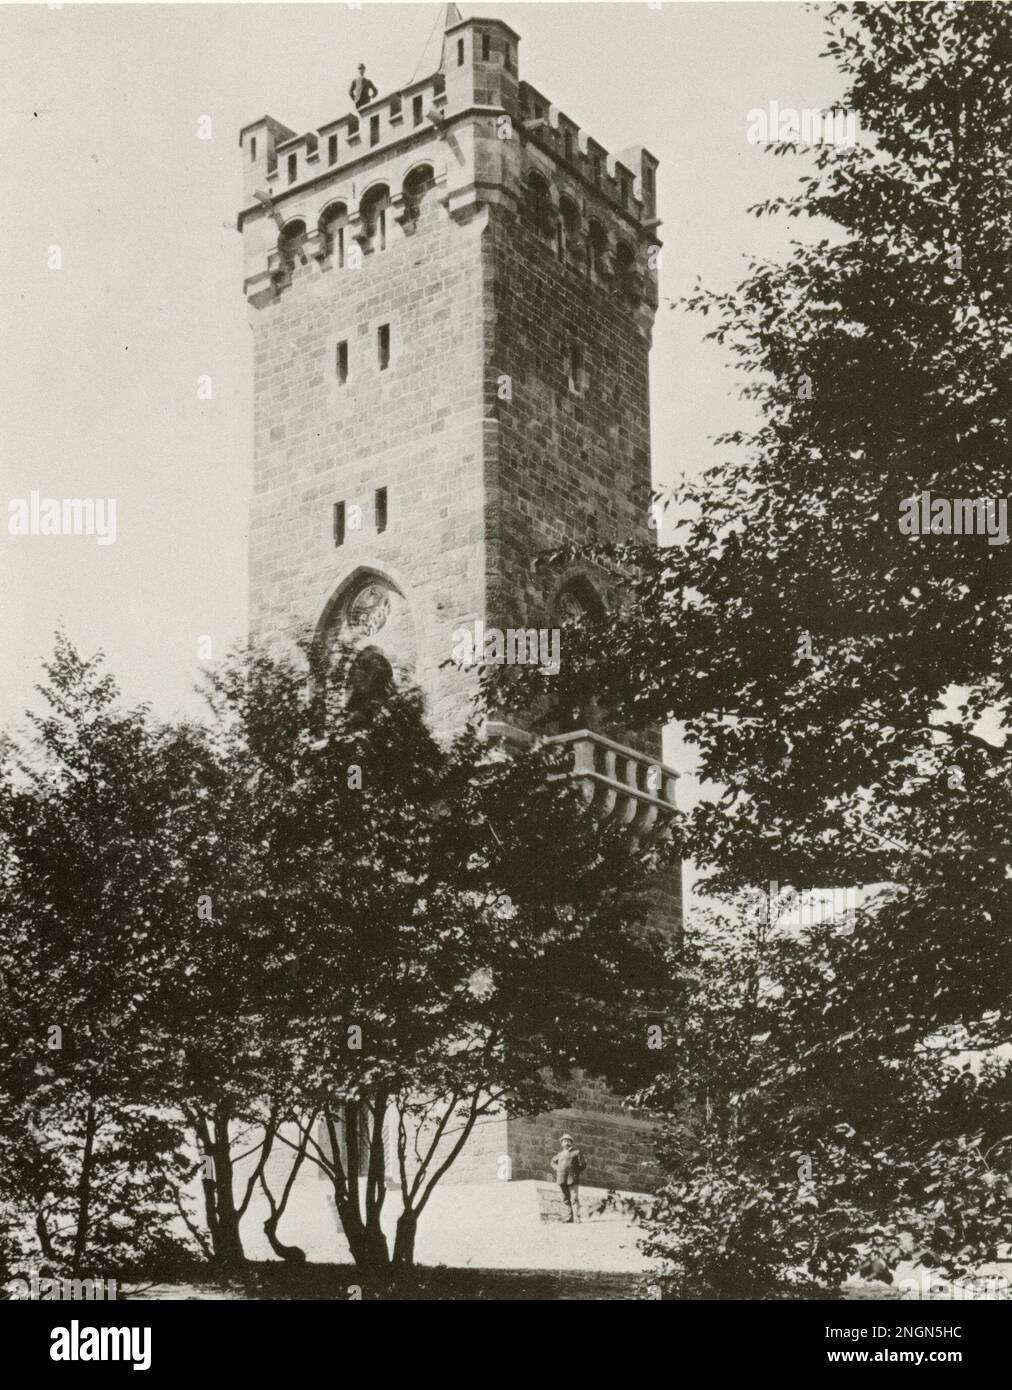 Bielefeld, Germania 1894 Drei Kaiserturm (Torre dei tre imperatori) sul Hünenburg. Fu costruito nel 1894 per celebrare l'anno dei tre Imperatori e demolito nel 1952. È stato utilizzato come torre di telecomunicazioni Foto Stock